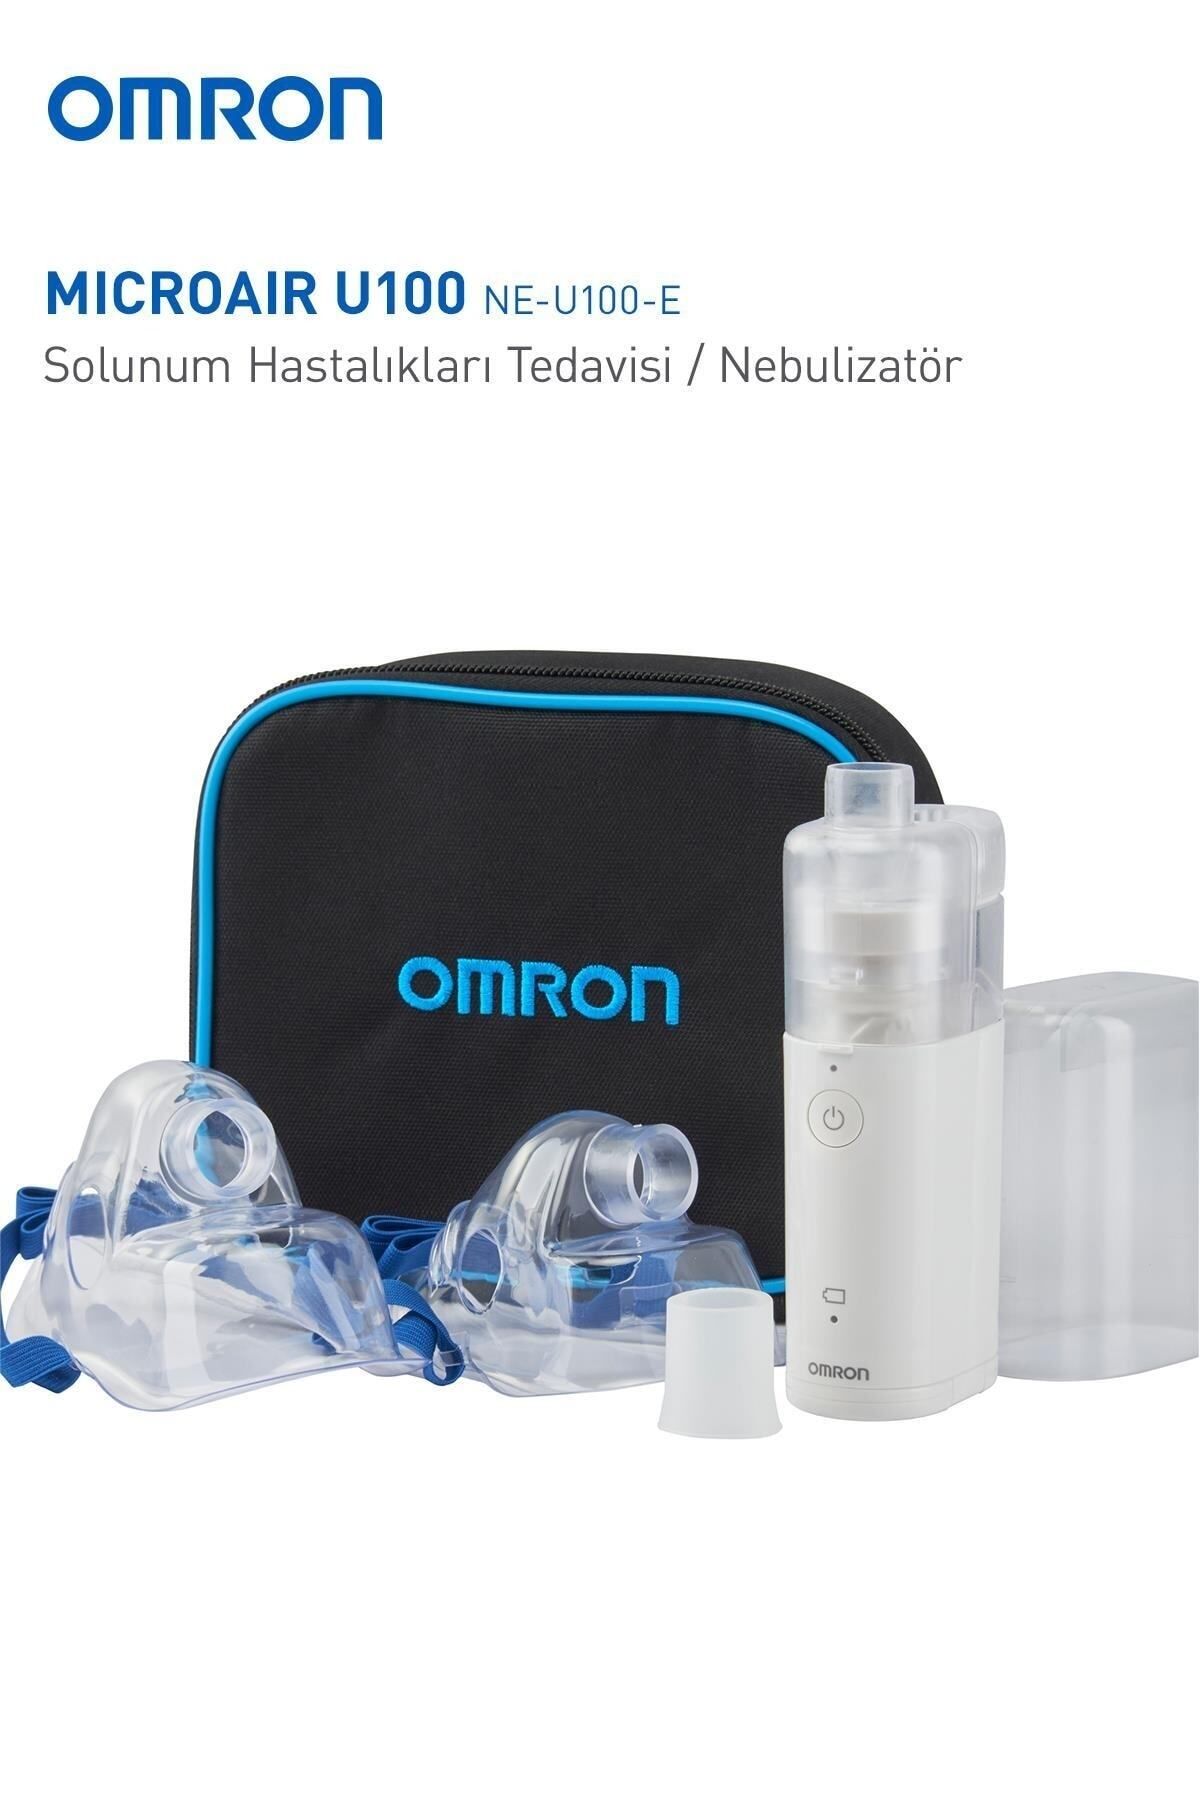 Omron Microair U100 Taşınabilir Mesh Nebülizatör